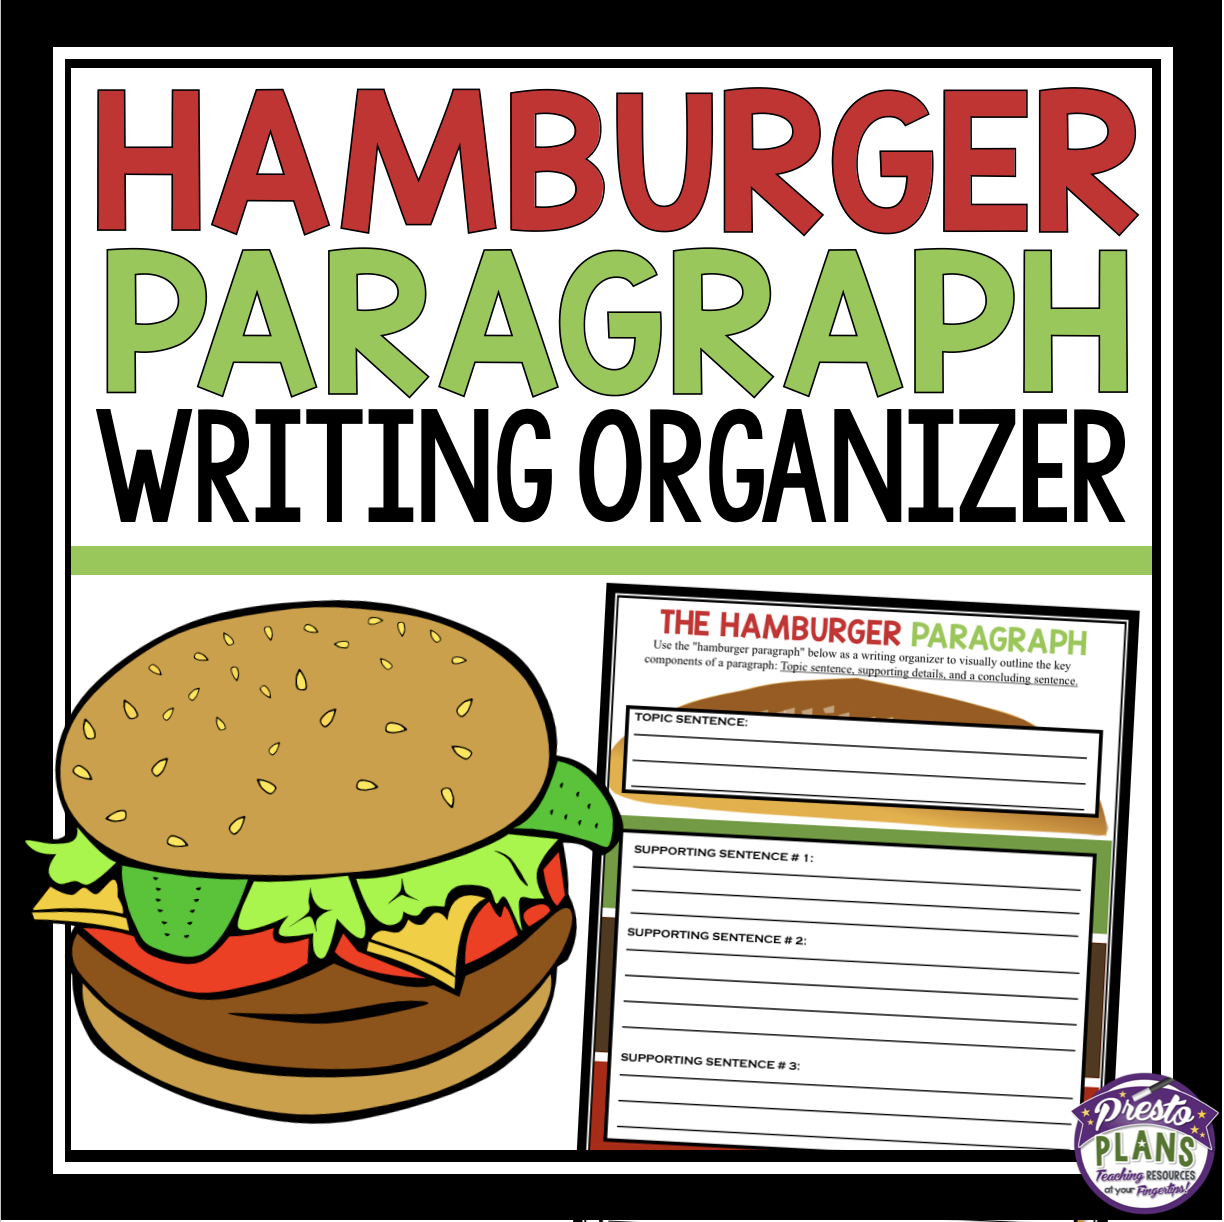 Hamburger paragraph writing